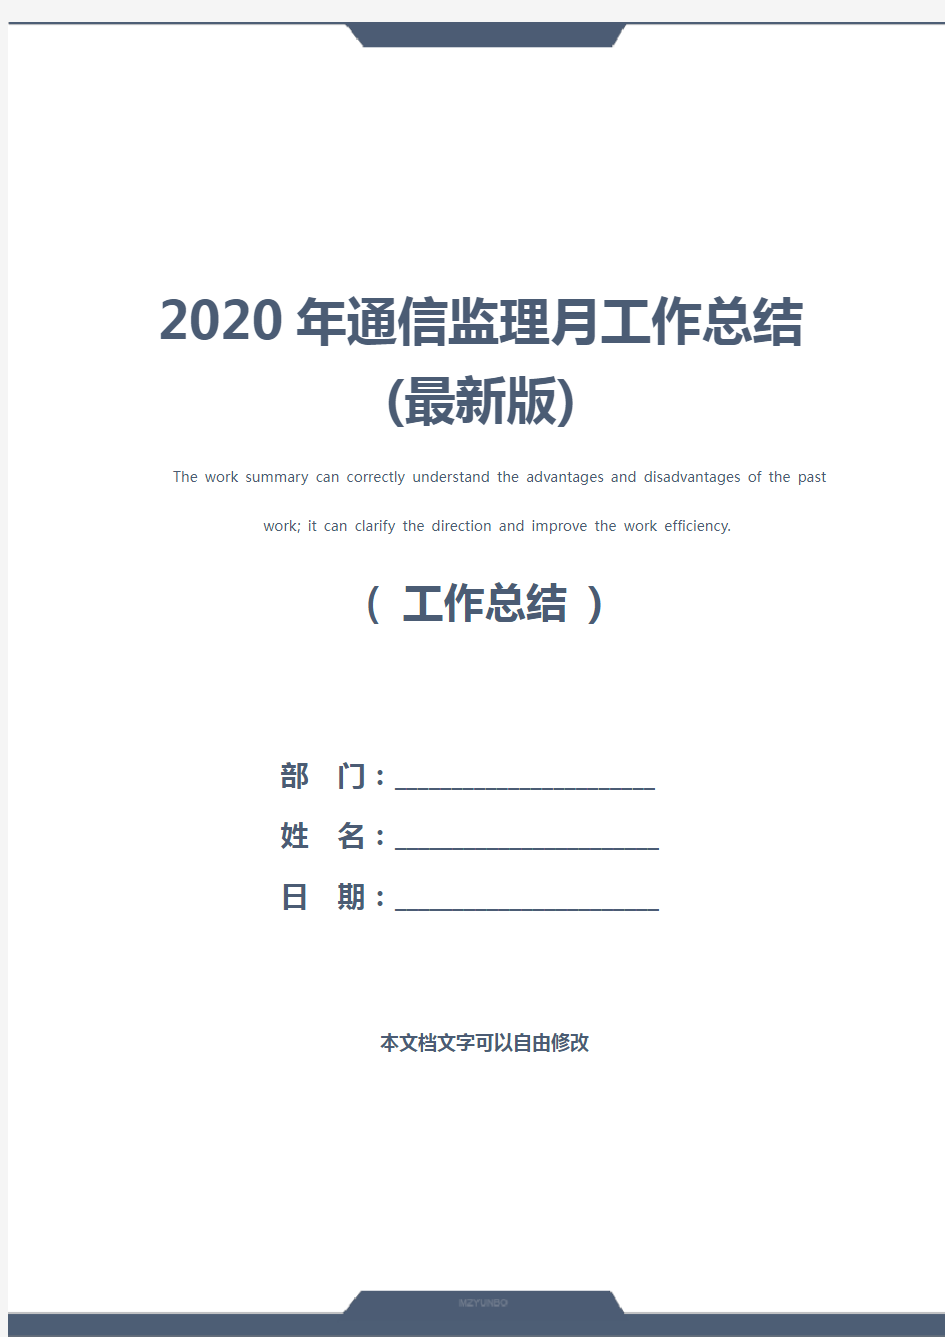 2020年通信监理月工作总结(最新版)